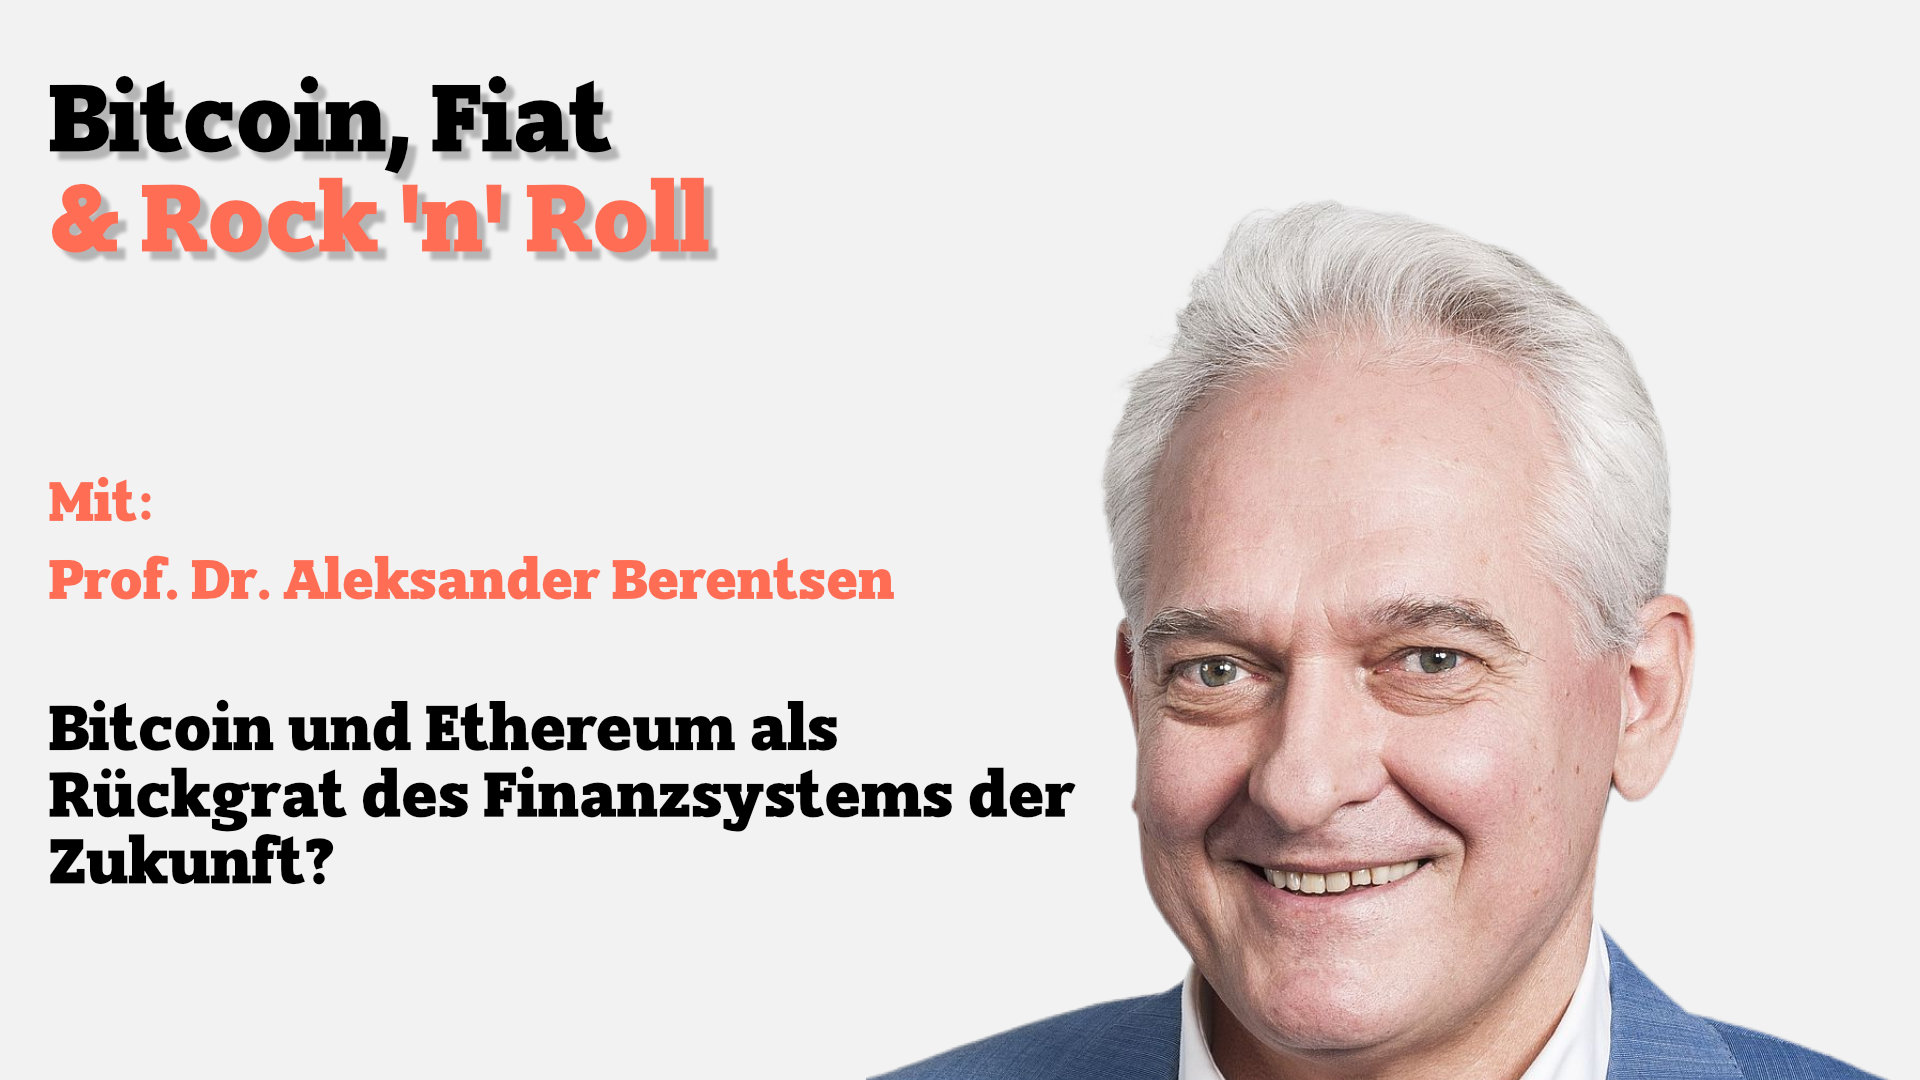 Bitcoin und Ethereum als Rückgrat des Finanzsystems der Zukunft? Ein Interview mit Prof. Aleksander Berentsen.